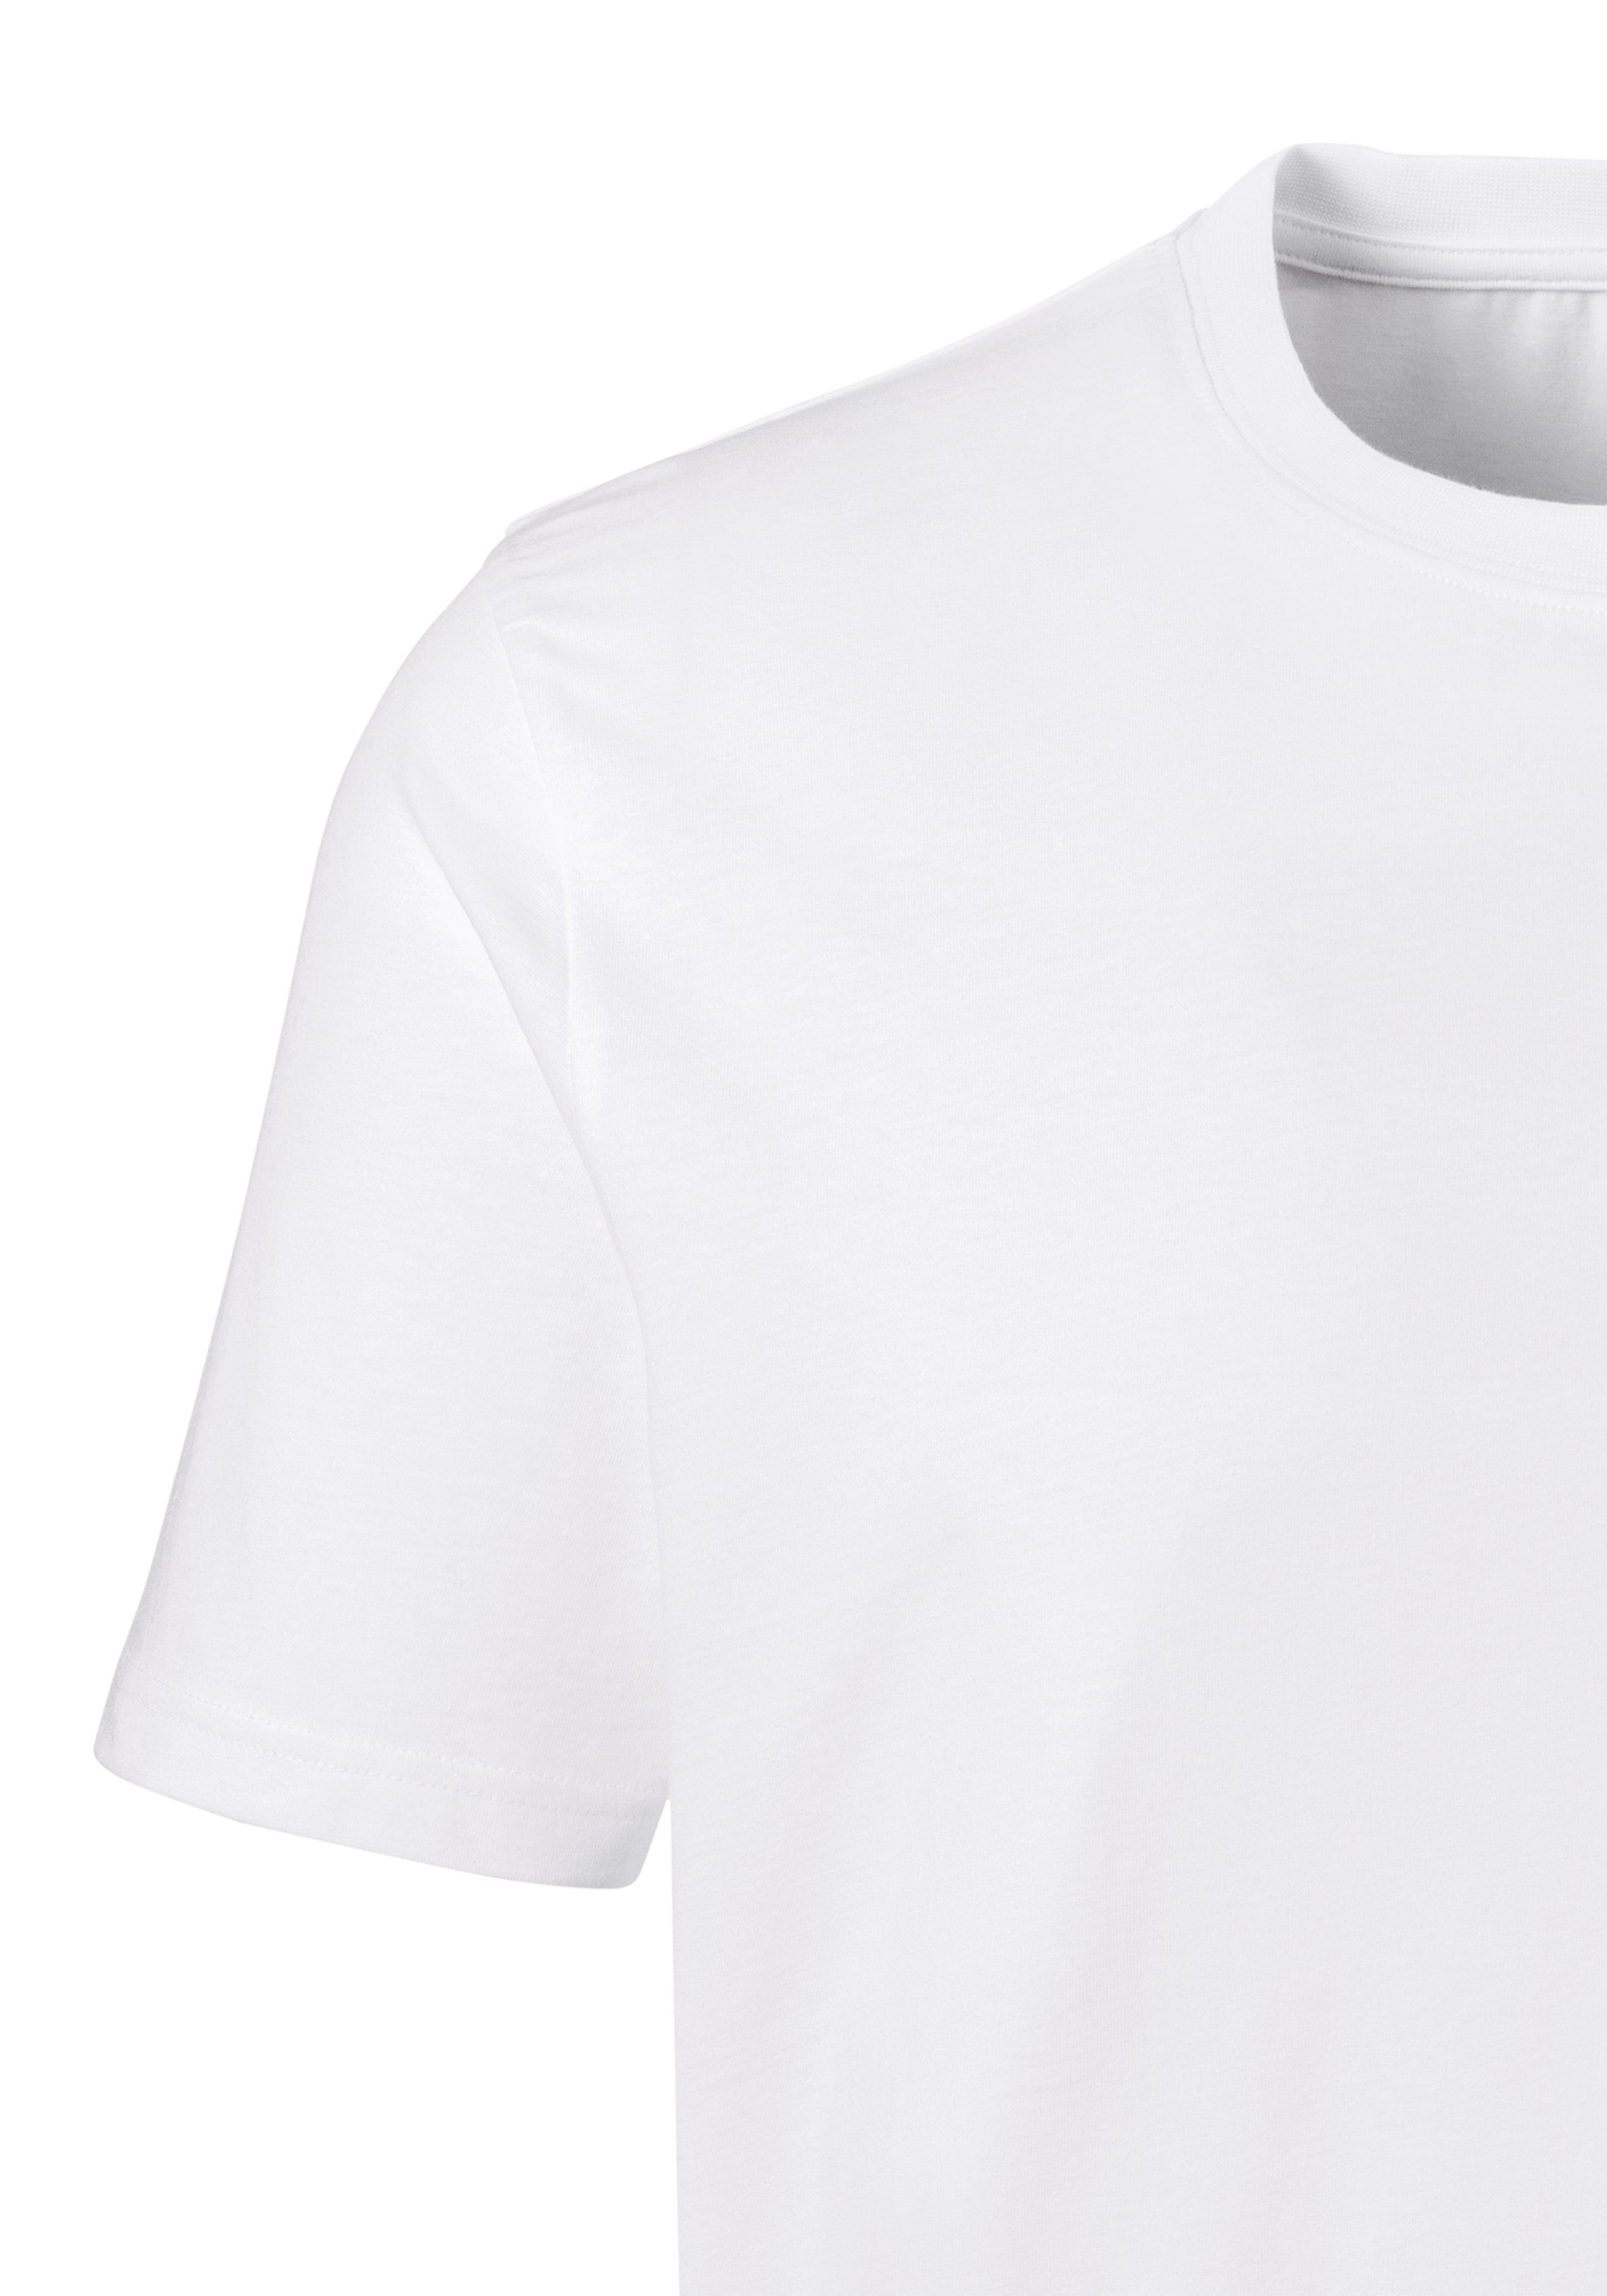 H.I.S Kurzarmshirt als (3er-Pack) perfekt weiß Unterziehshirt